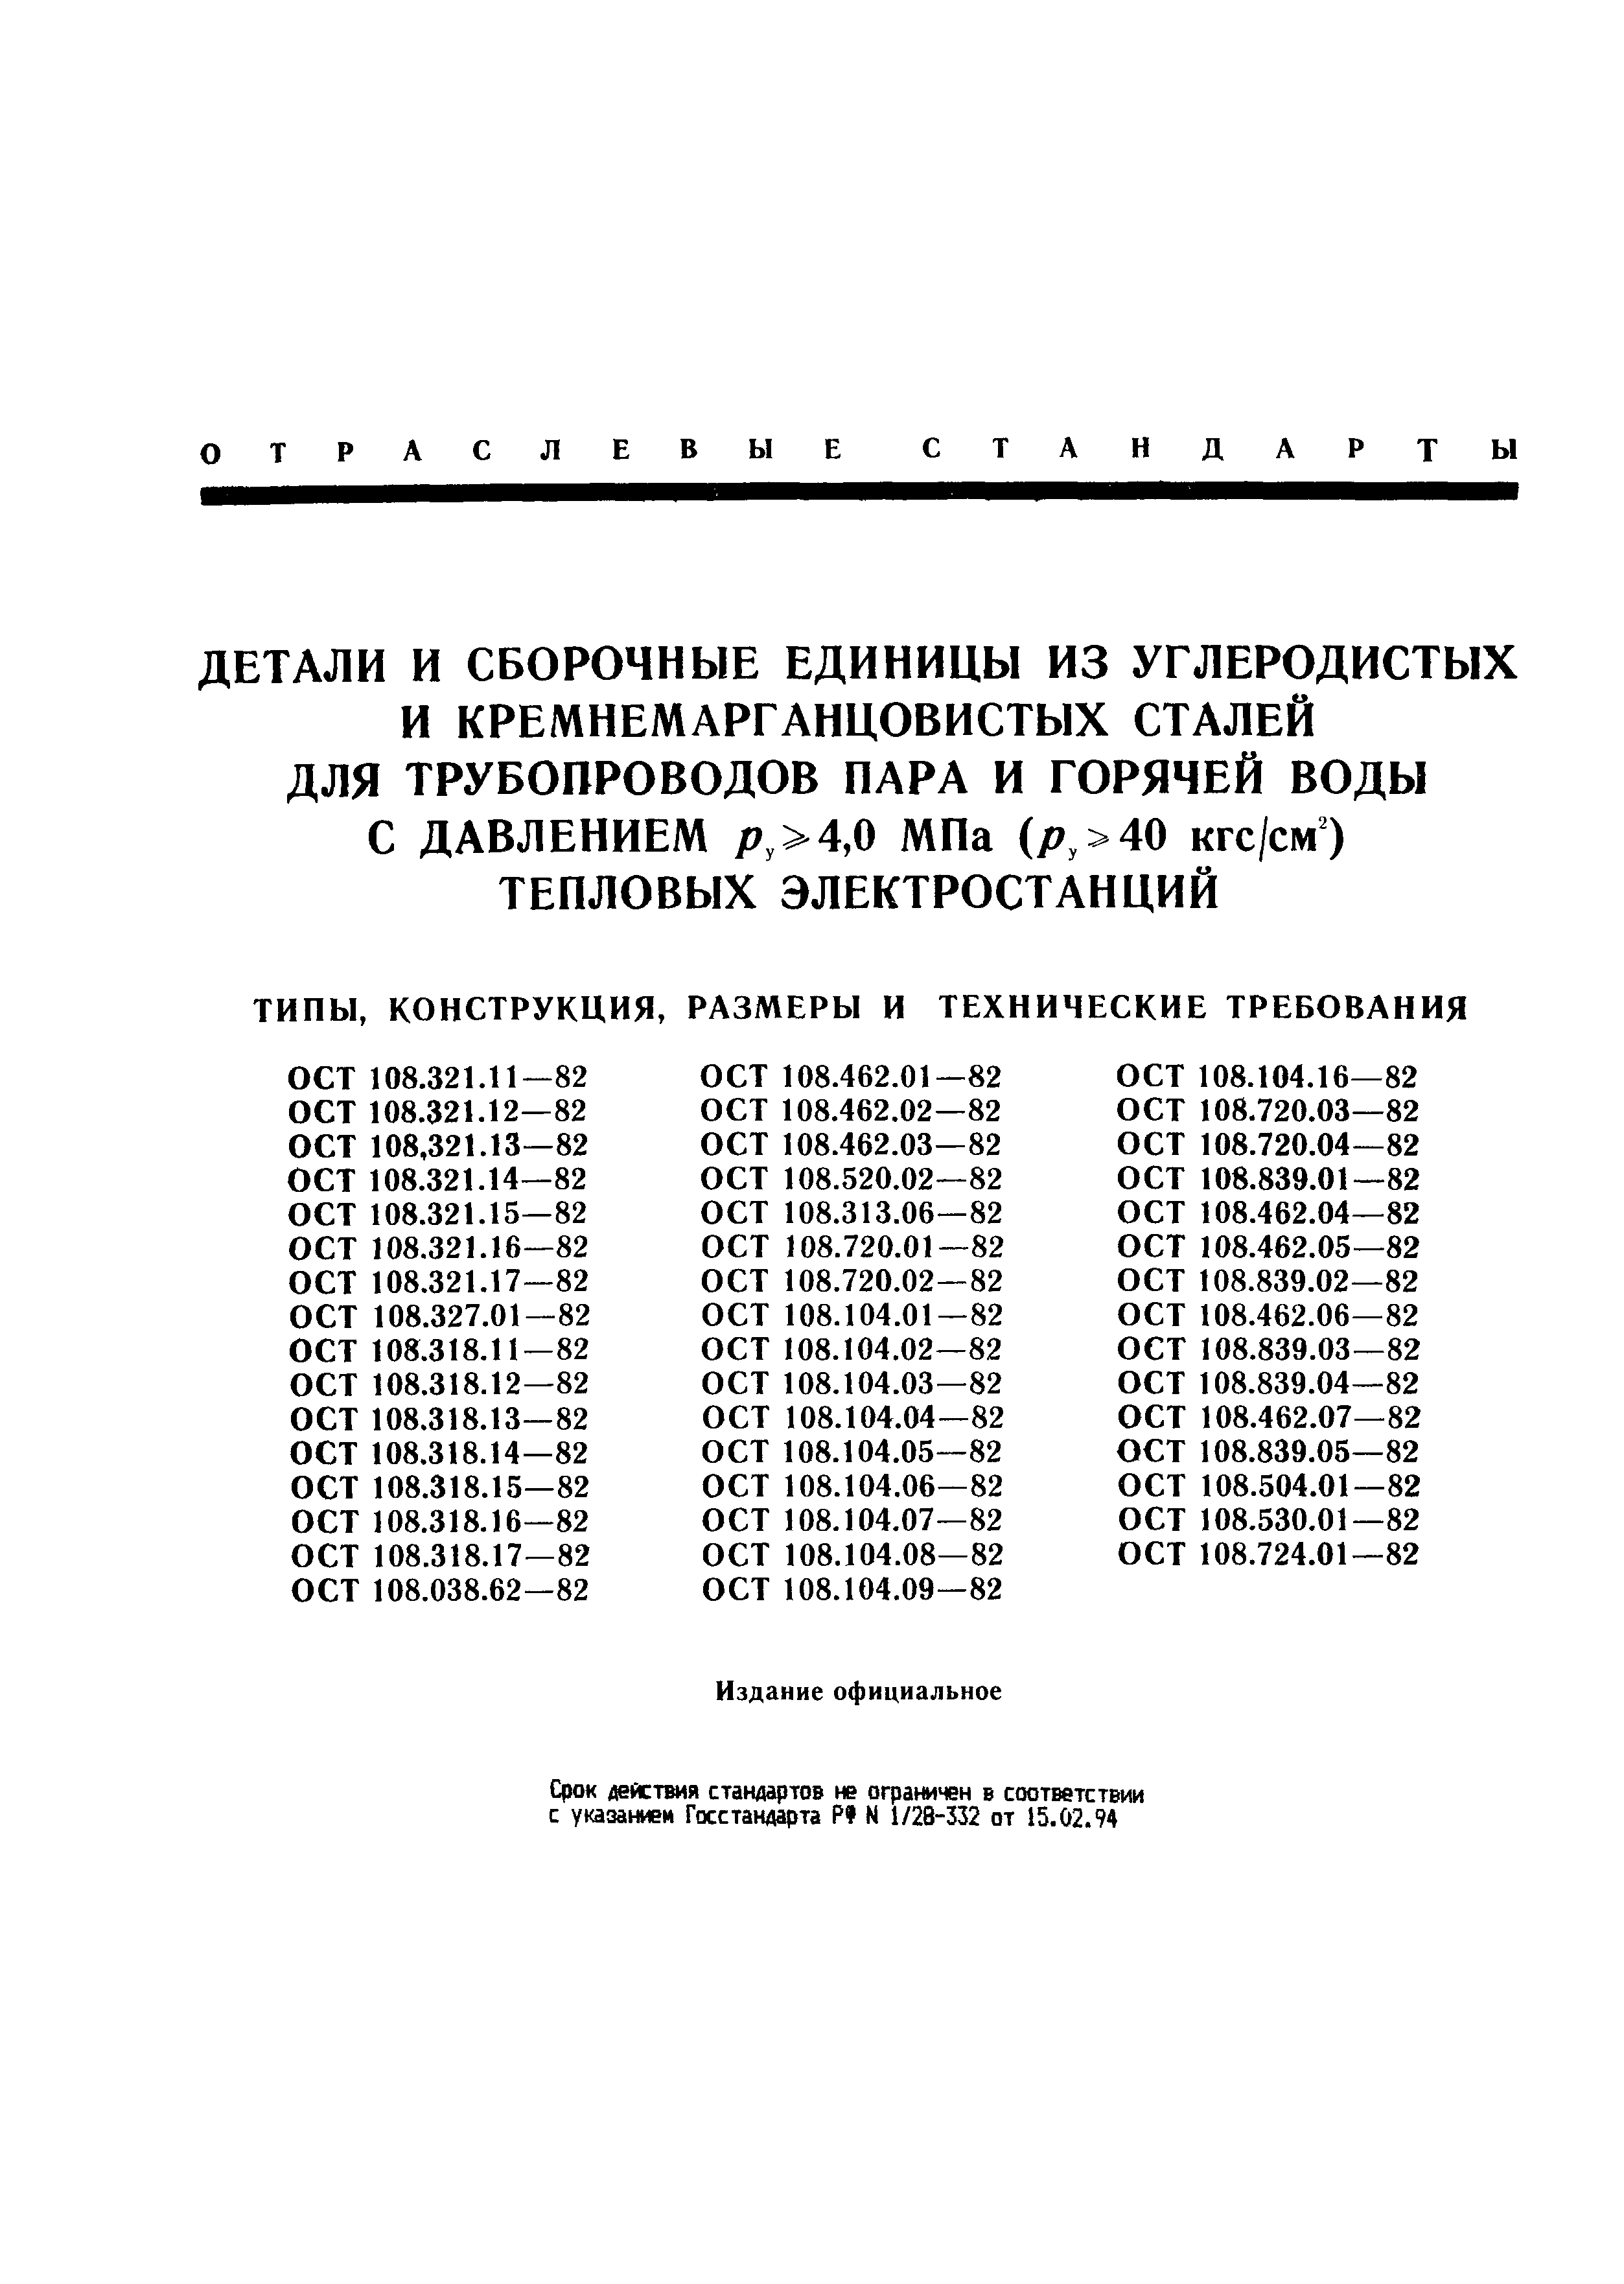 ОСТ 108.318.15-82